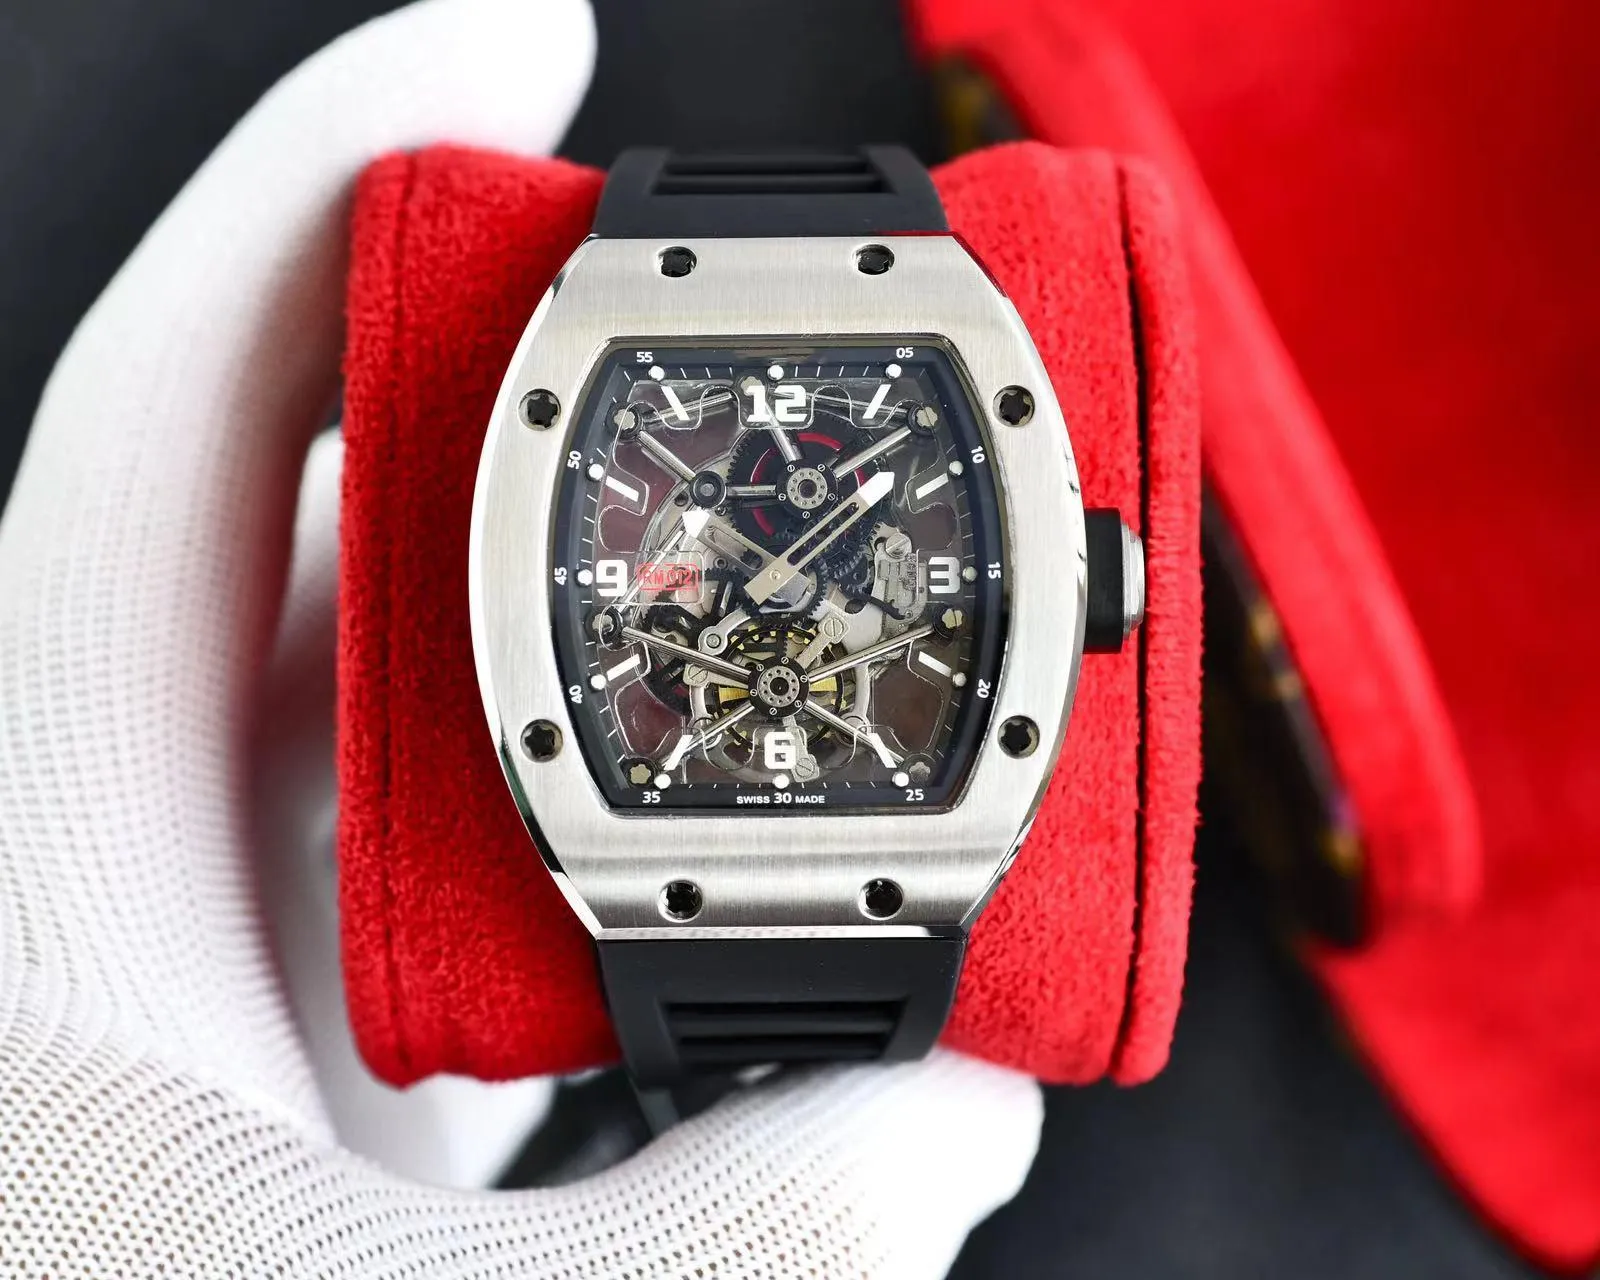 ZY-fabriek produceert herenhorloge RM012 Zwitsers mechanisch uurwerk, met diamanten ingelegde stalen kast, vouwsluiting